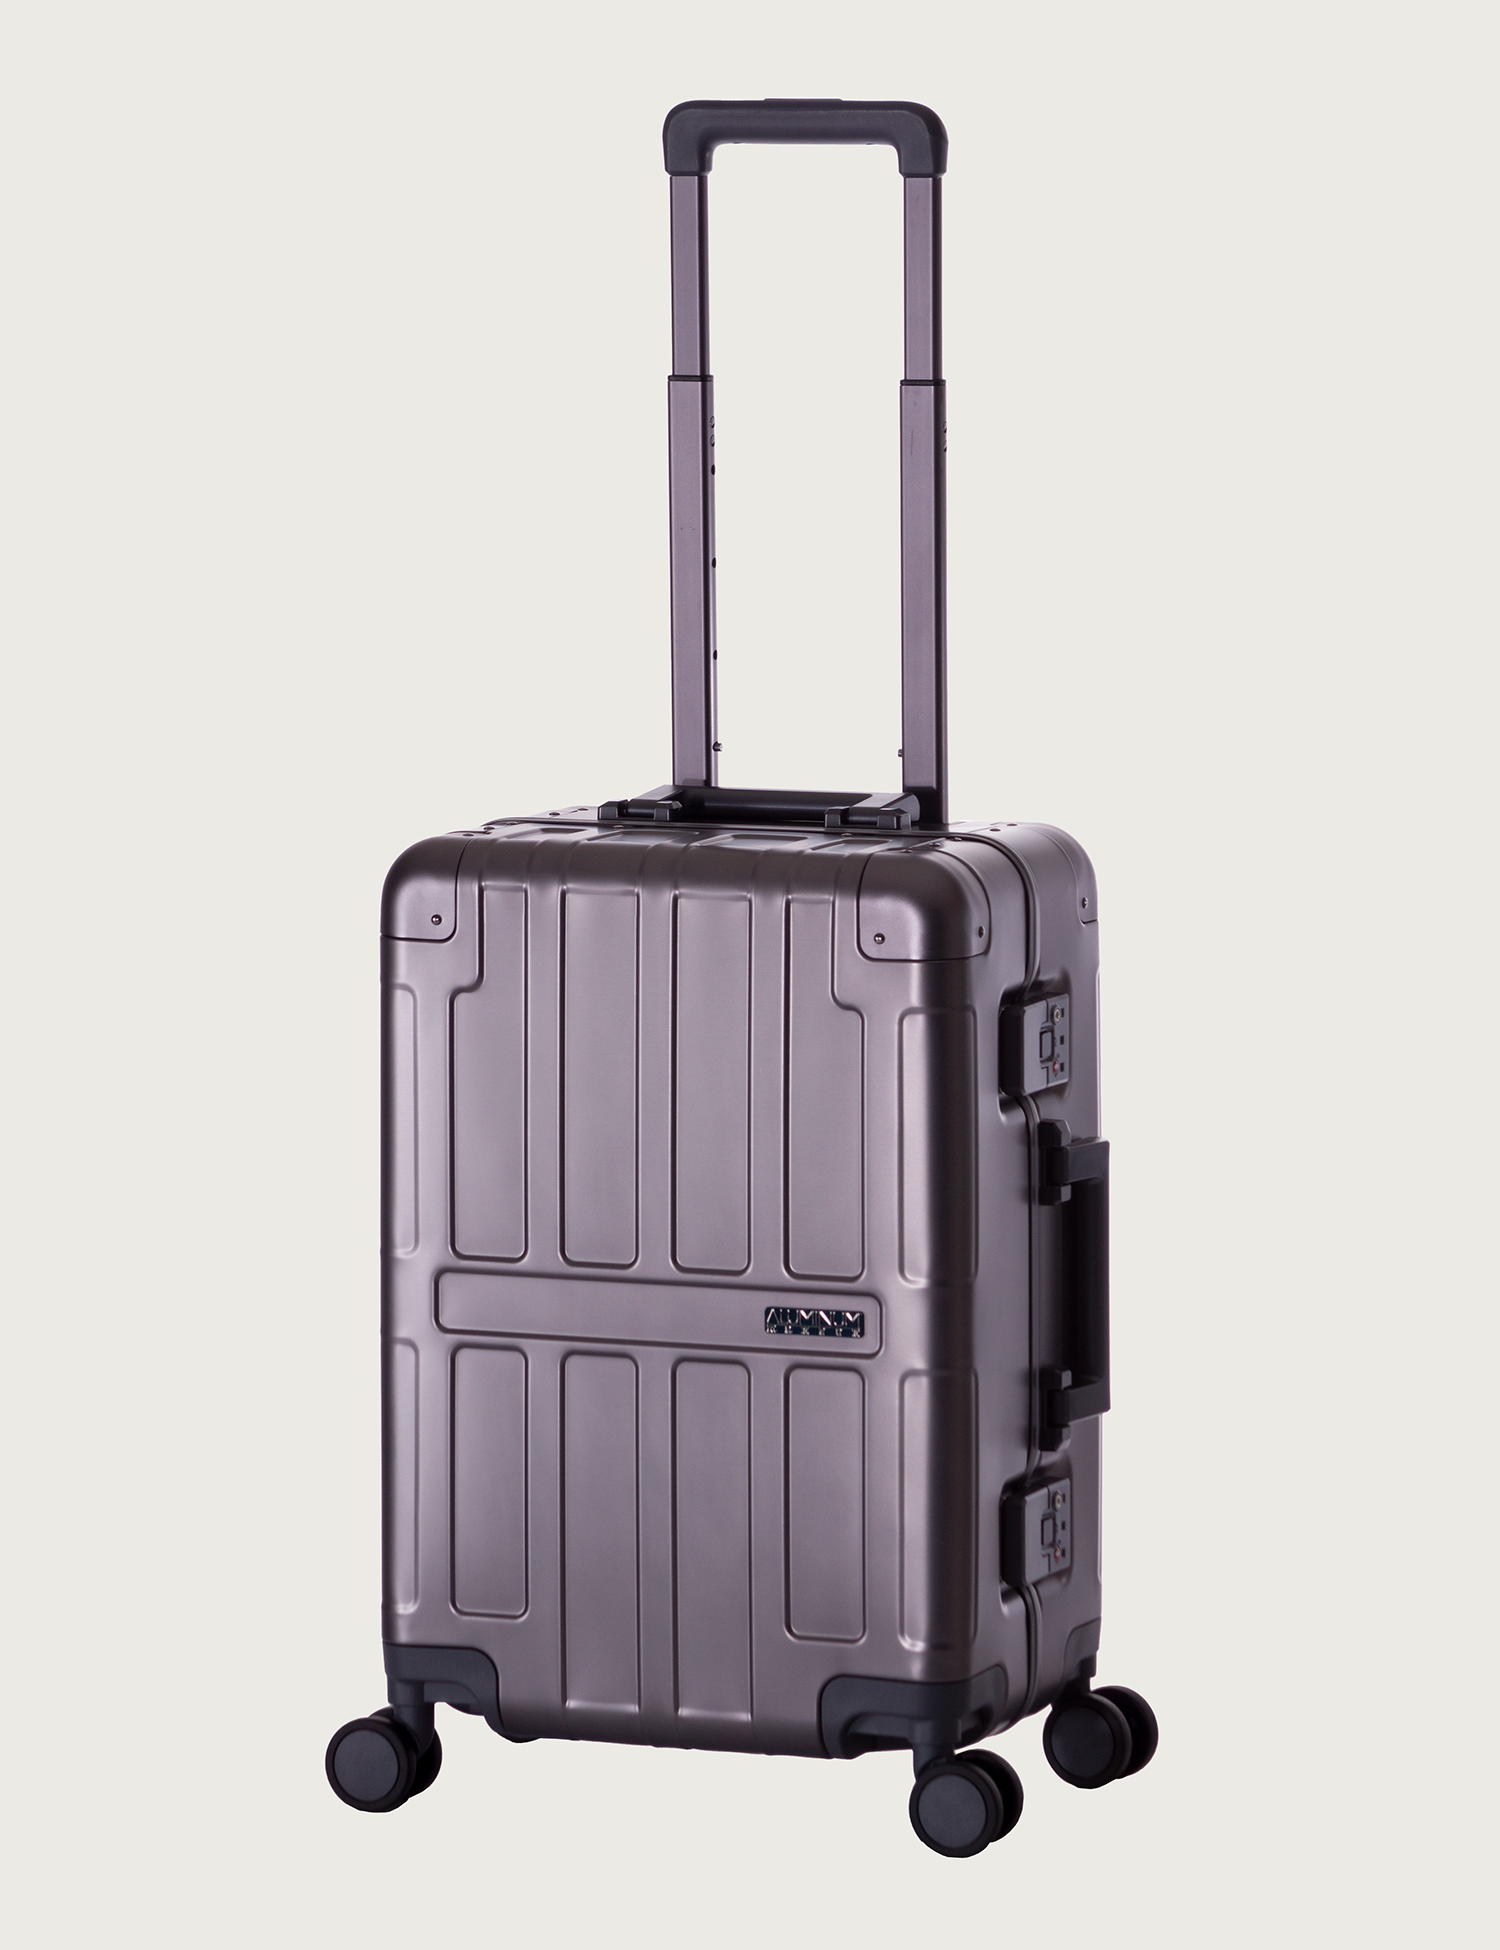 アジア・ラゲージのスーツケース MAXBOX マックスボックス | アジア